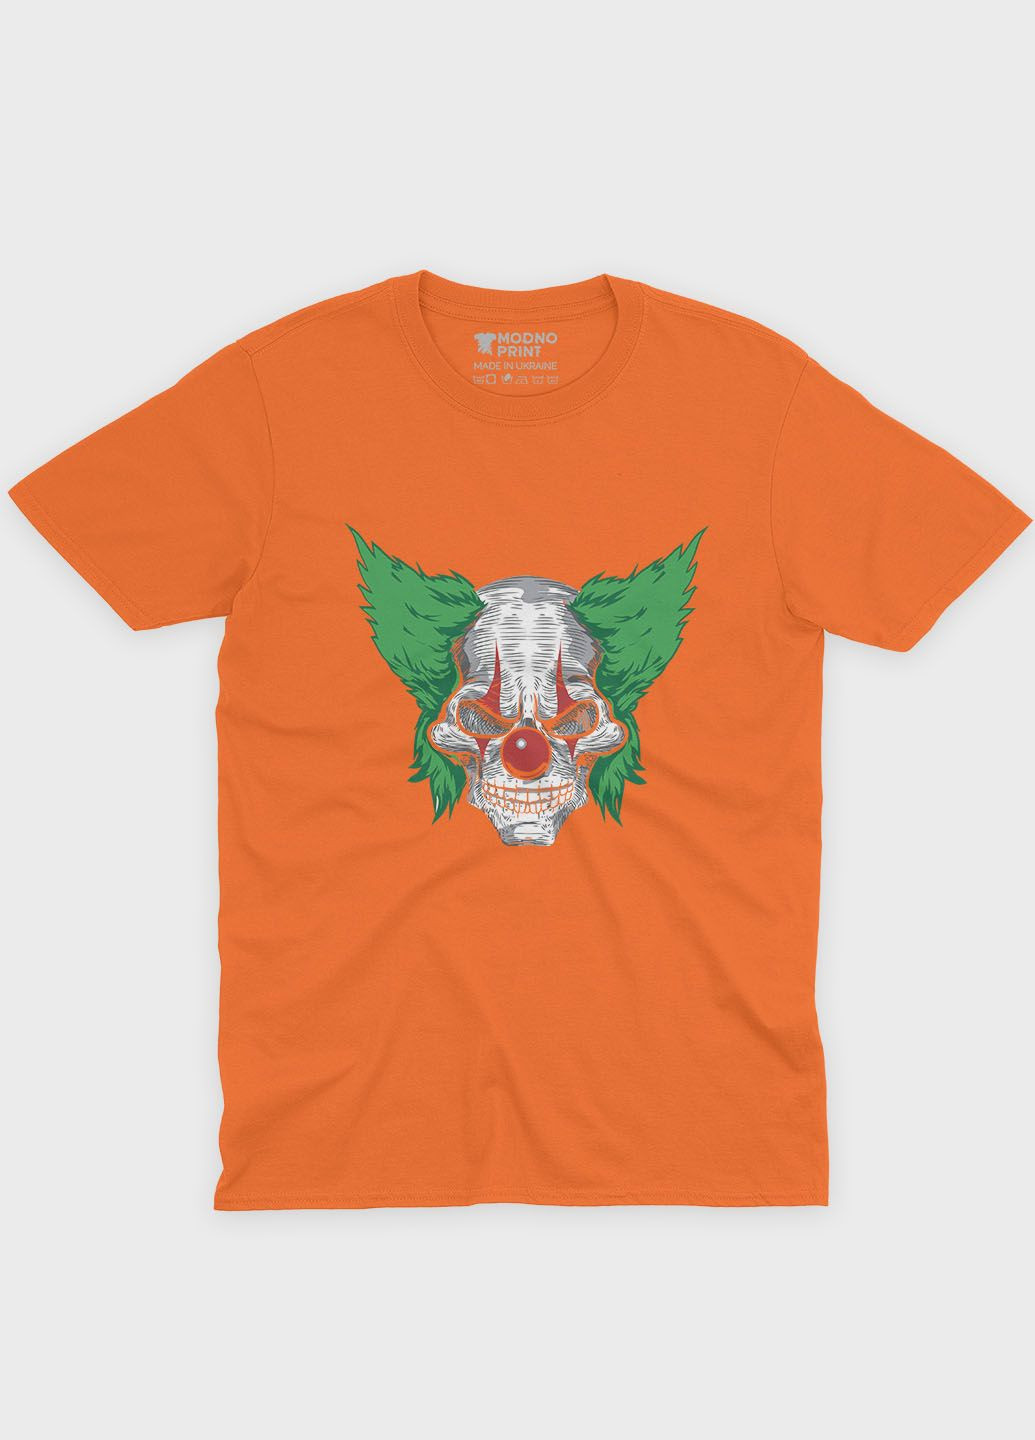 Оранжевая демисезонная футболка для мальчика с принтом супервора - джокер (ts001-1-ora-006-005-003-b) Modno